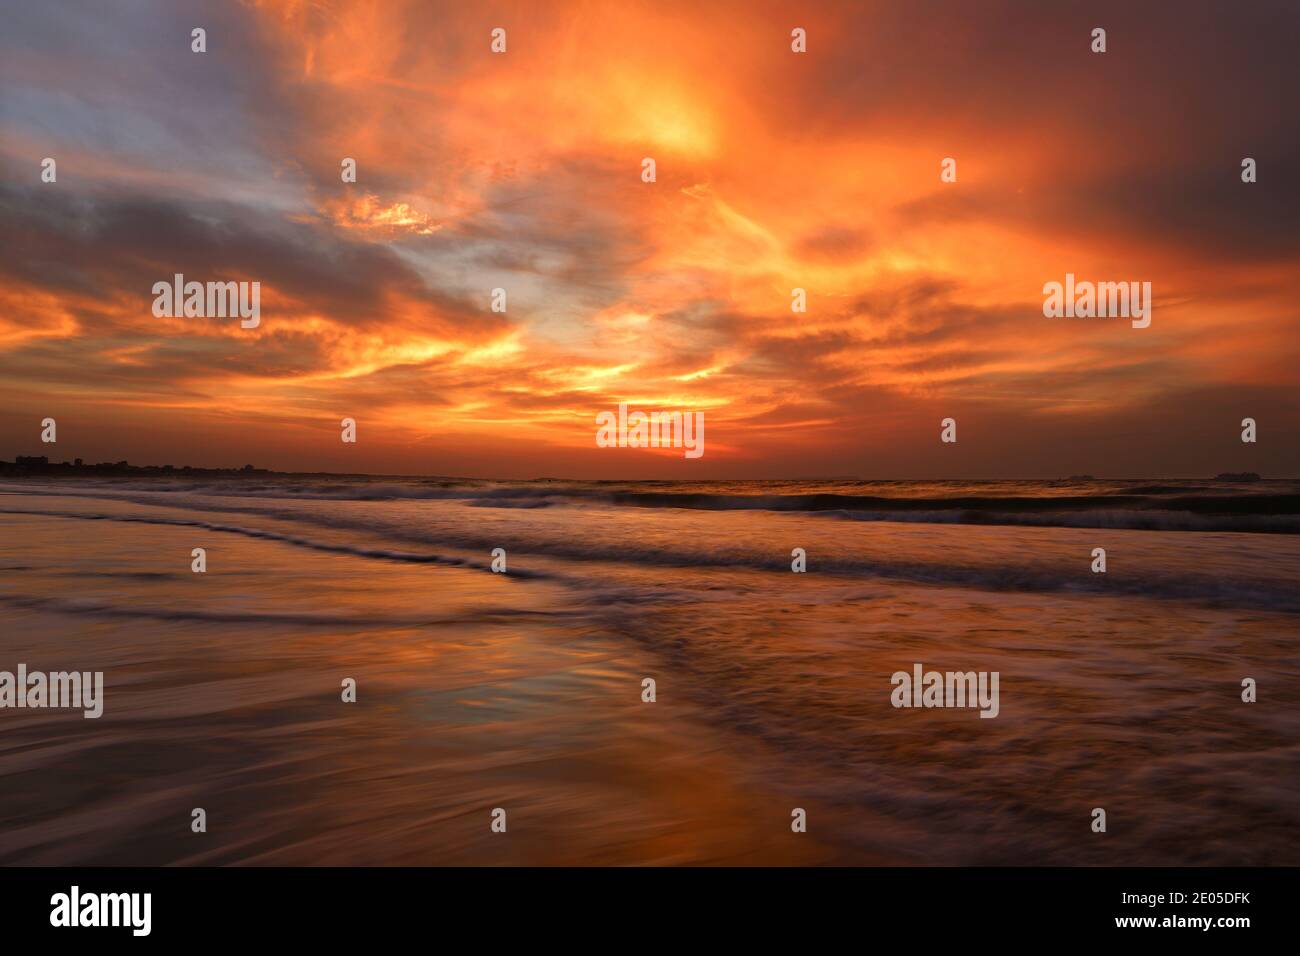 Le soleil levant met le feu au ciel rempli de nuages alors que les vagues se roulent sur la plage primée de Bournemouth en contrebas. Banque D'Images